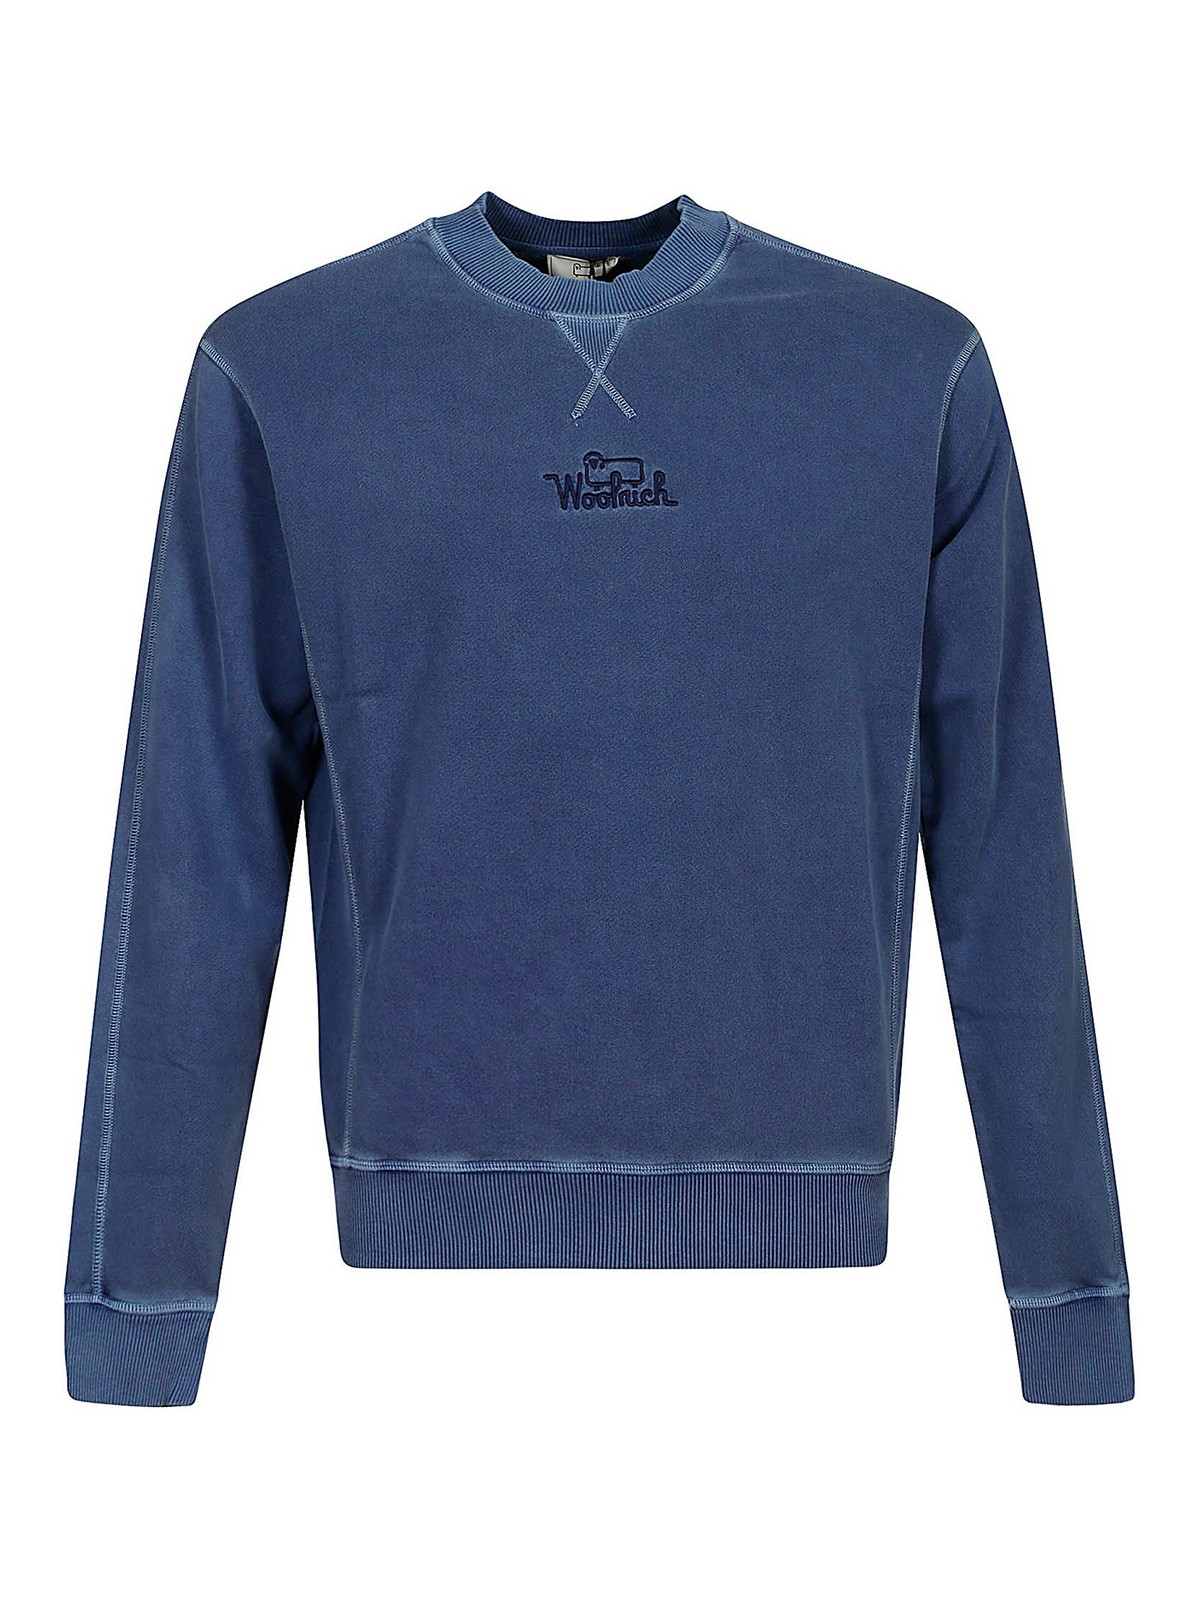 Woolrich Branded Sweatshirt In Blue